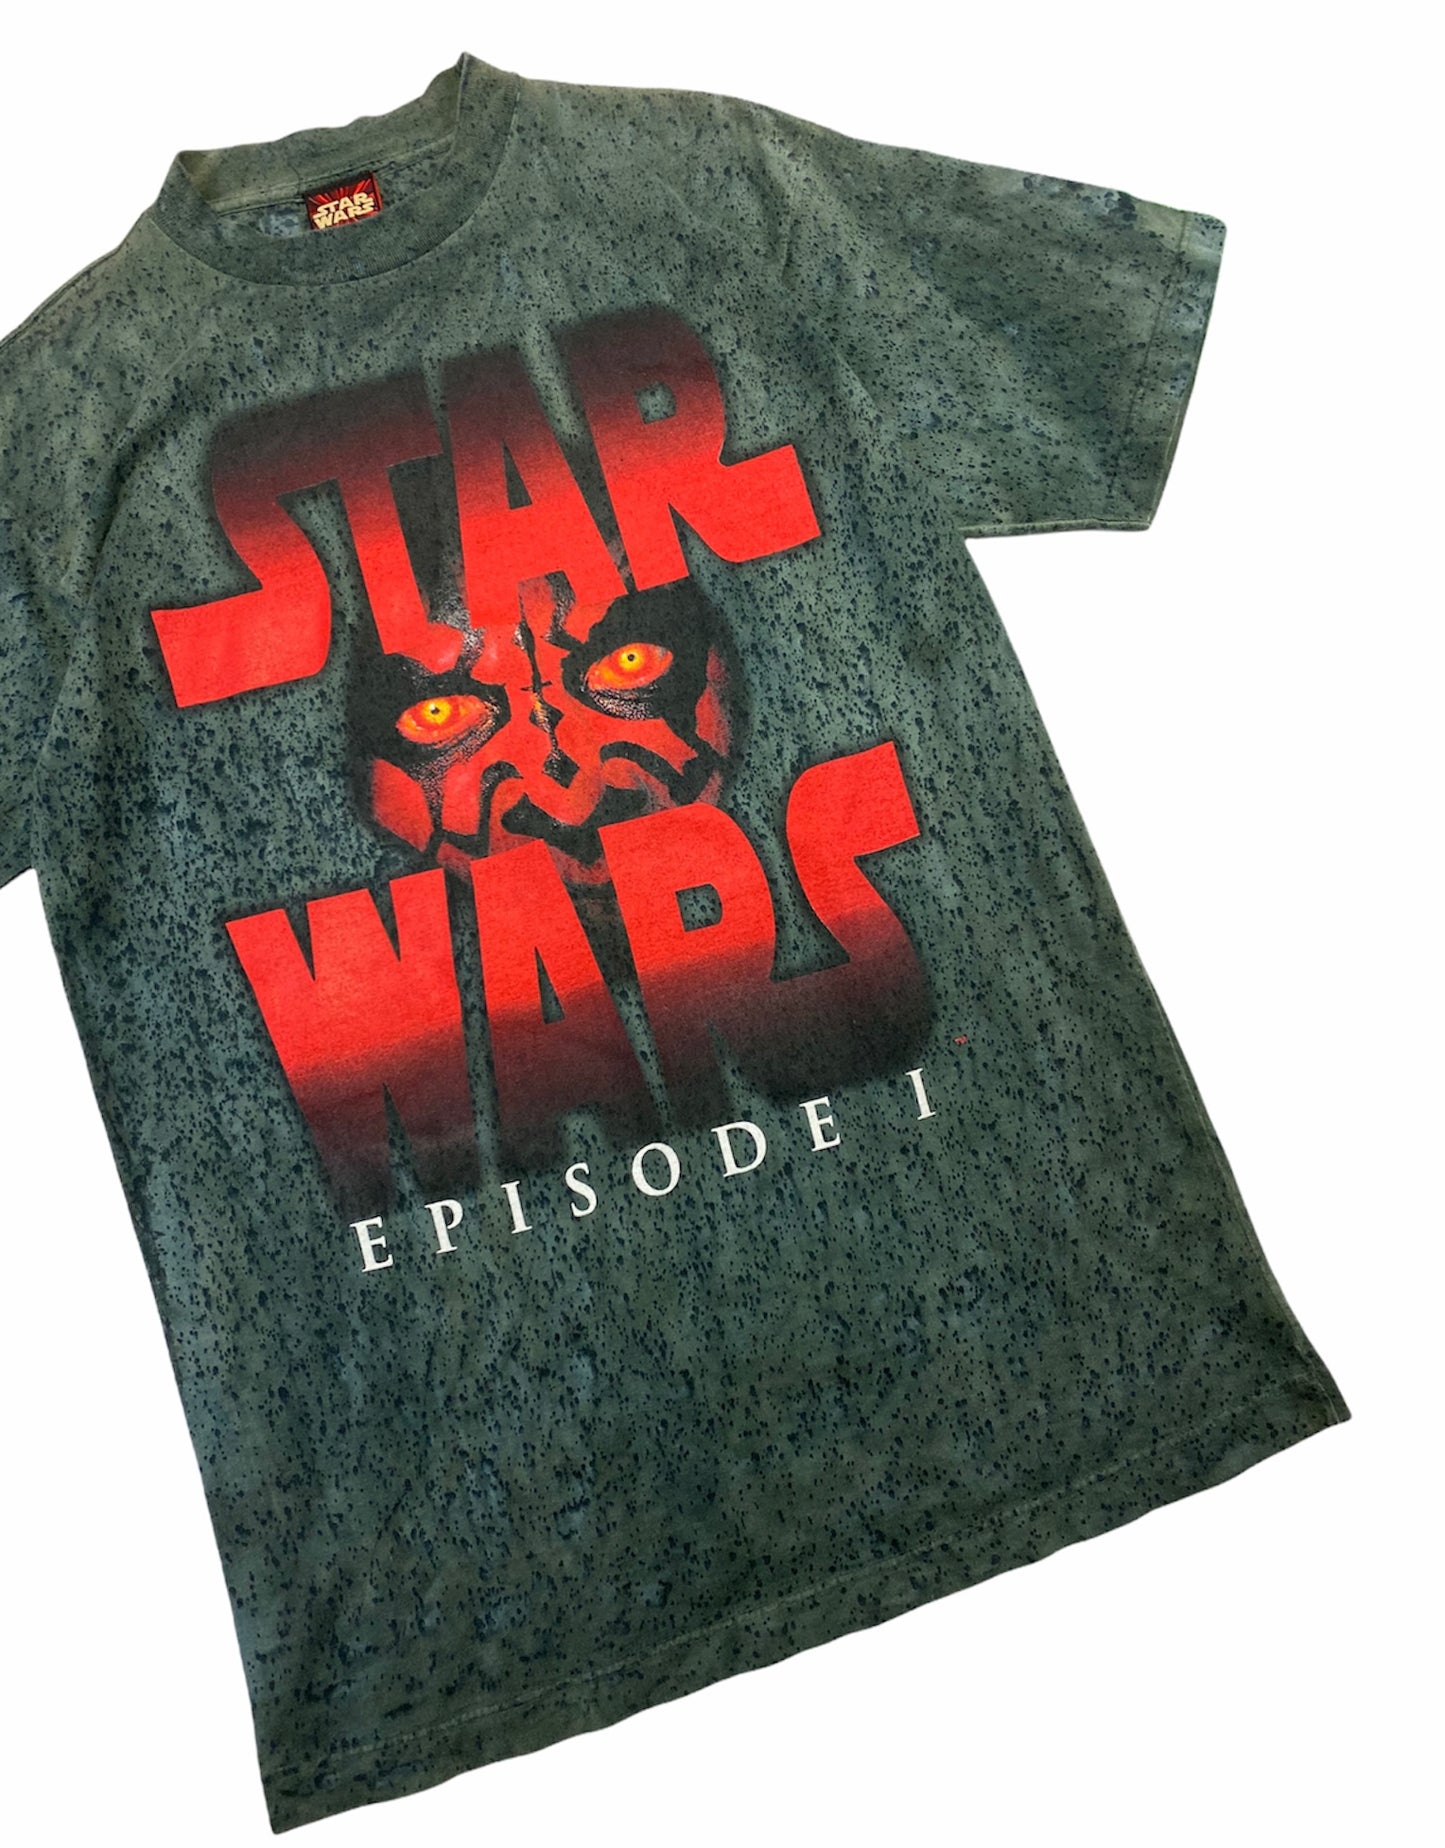 1999 Star Wars Episode 1 Darth Maul T-Shirt